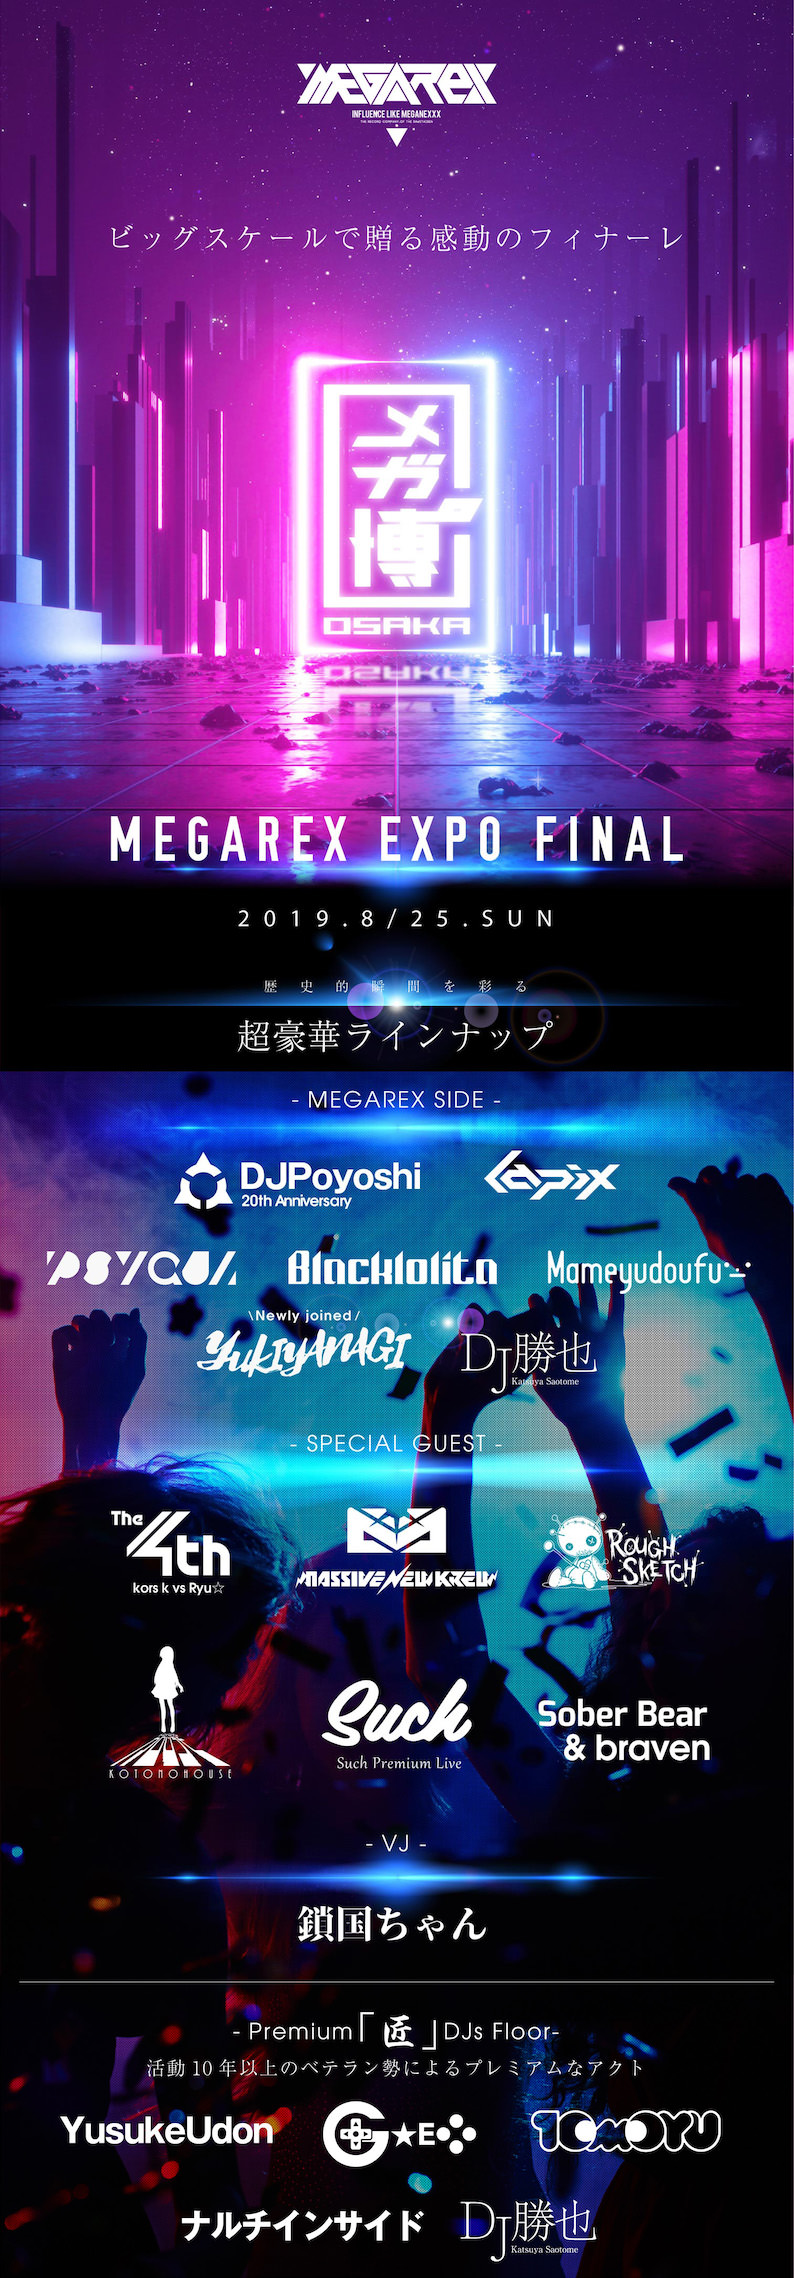 MEGAREX EXPO FINAL 2019.08.25